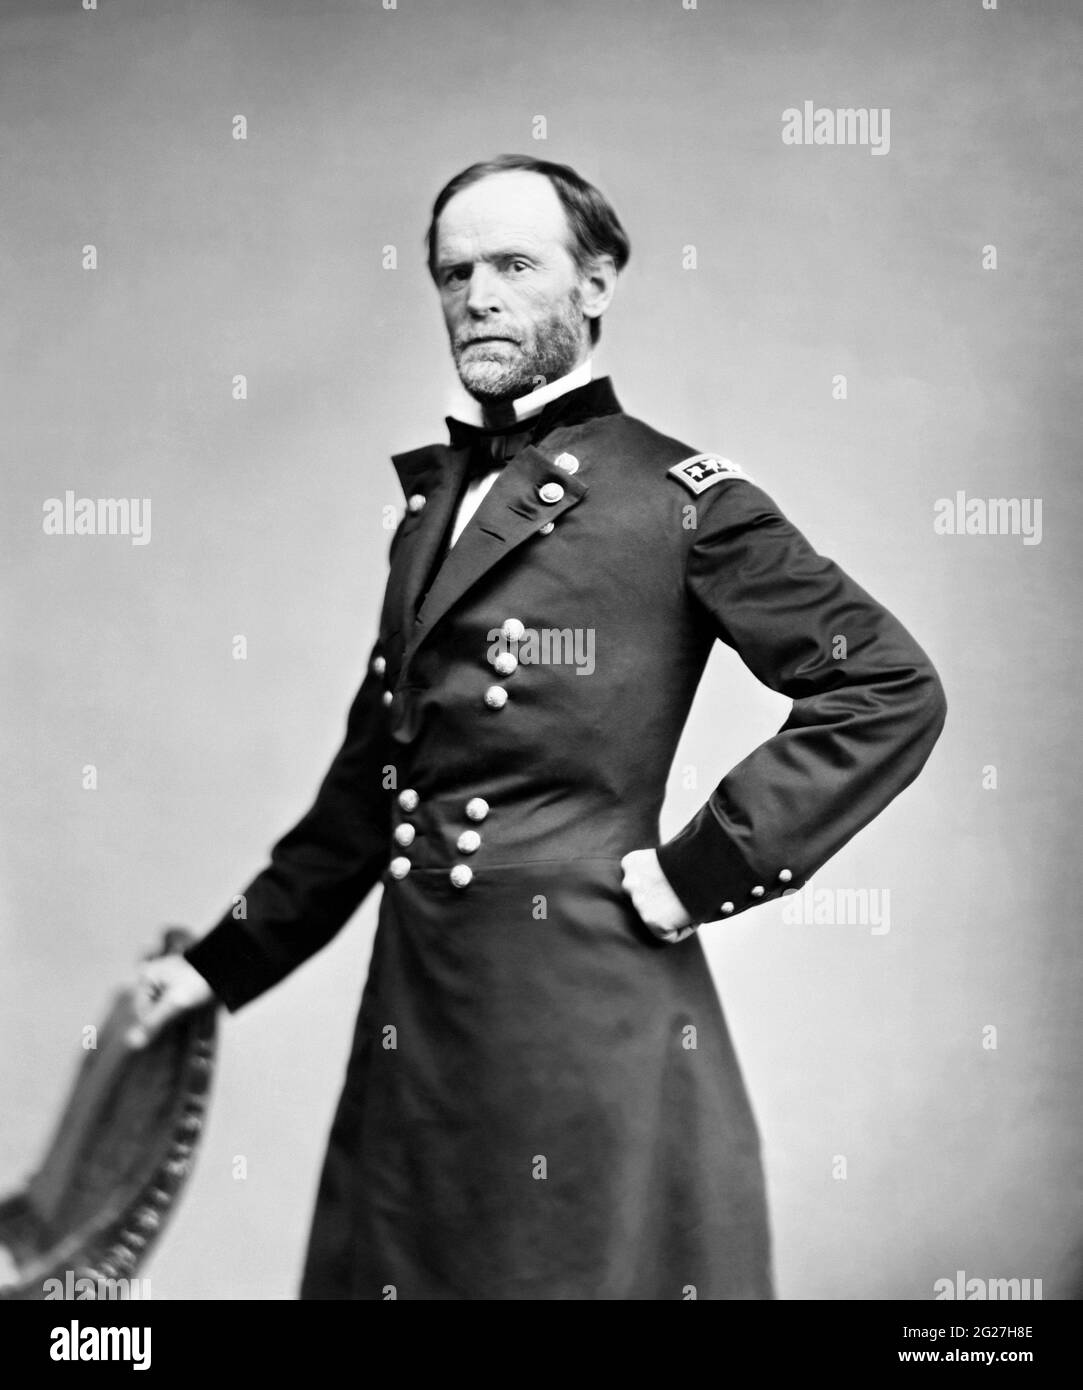 Ritratto del generale William Tecumseh Sherman, un soldato americano dell'esercito dell'Unione. Foto Stock